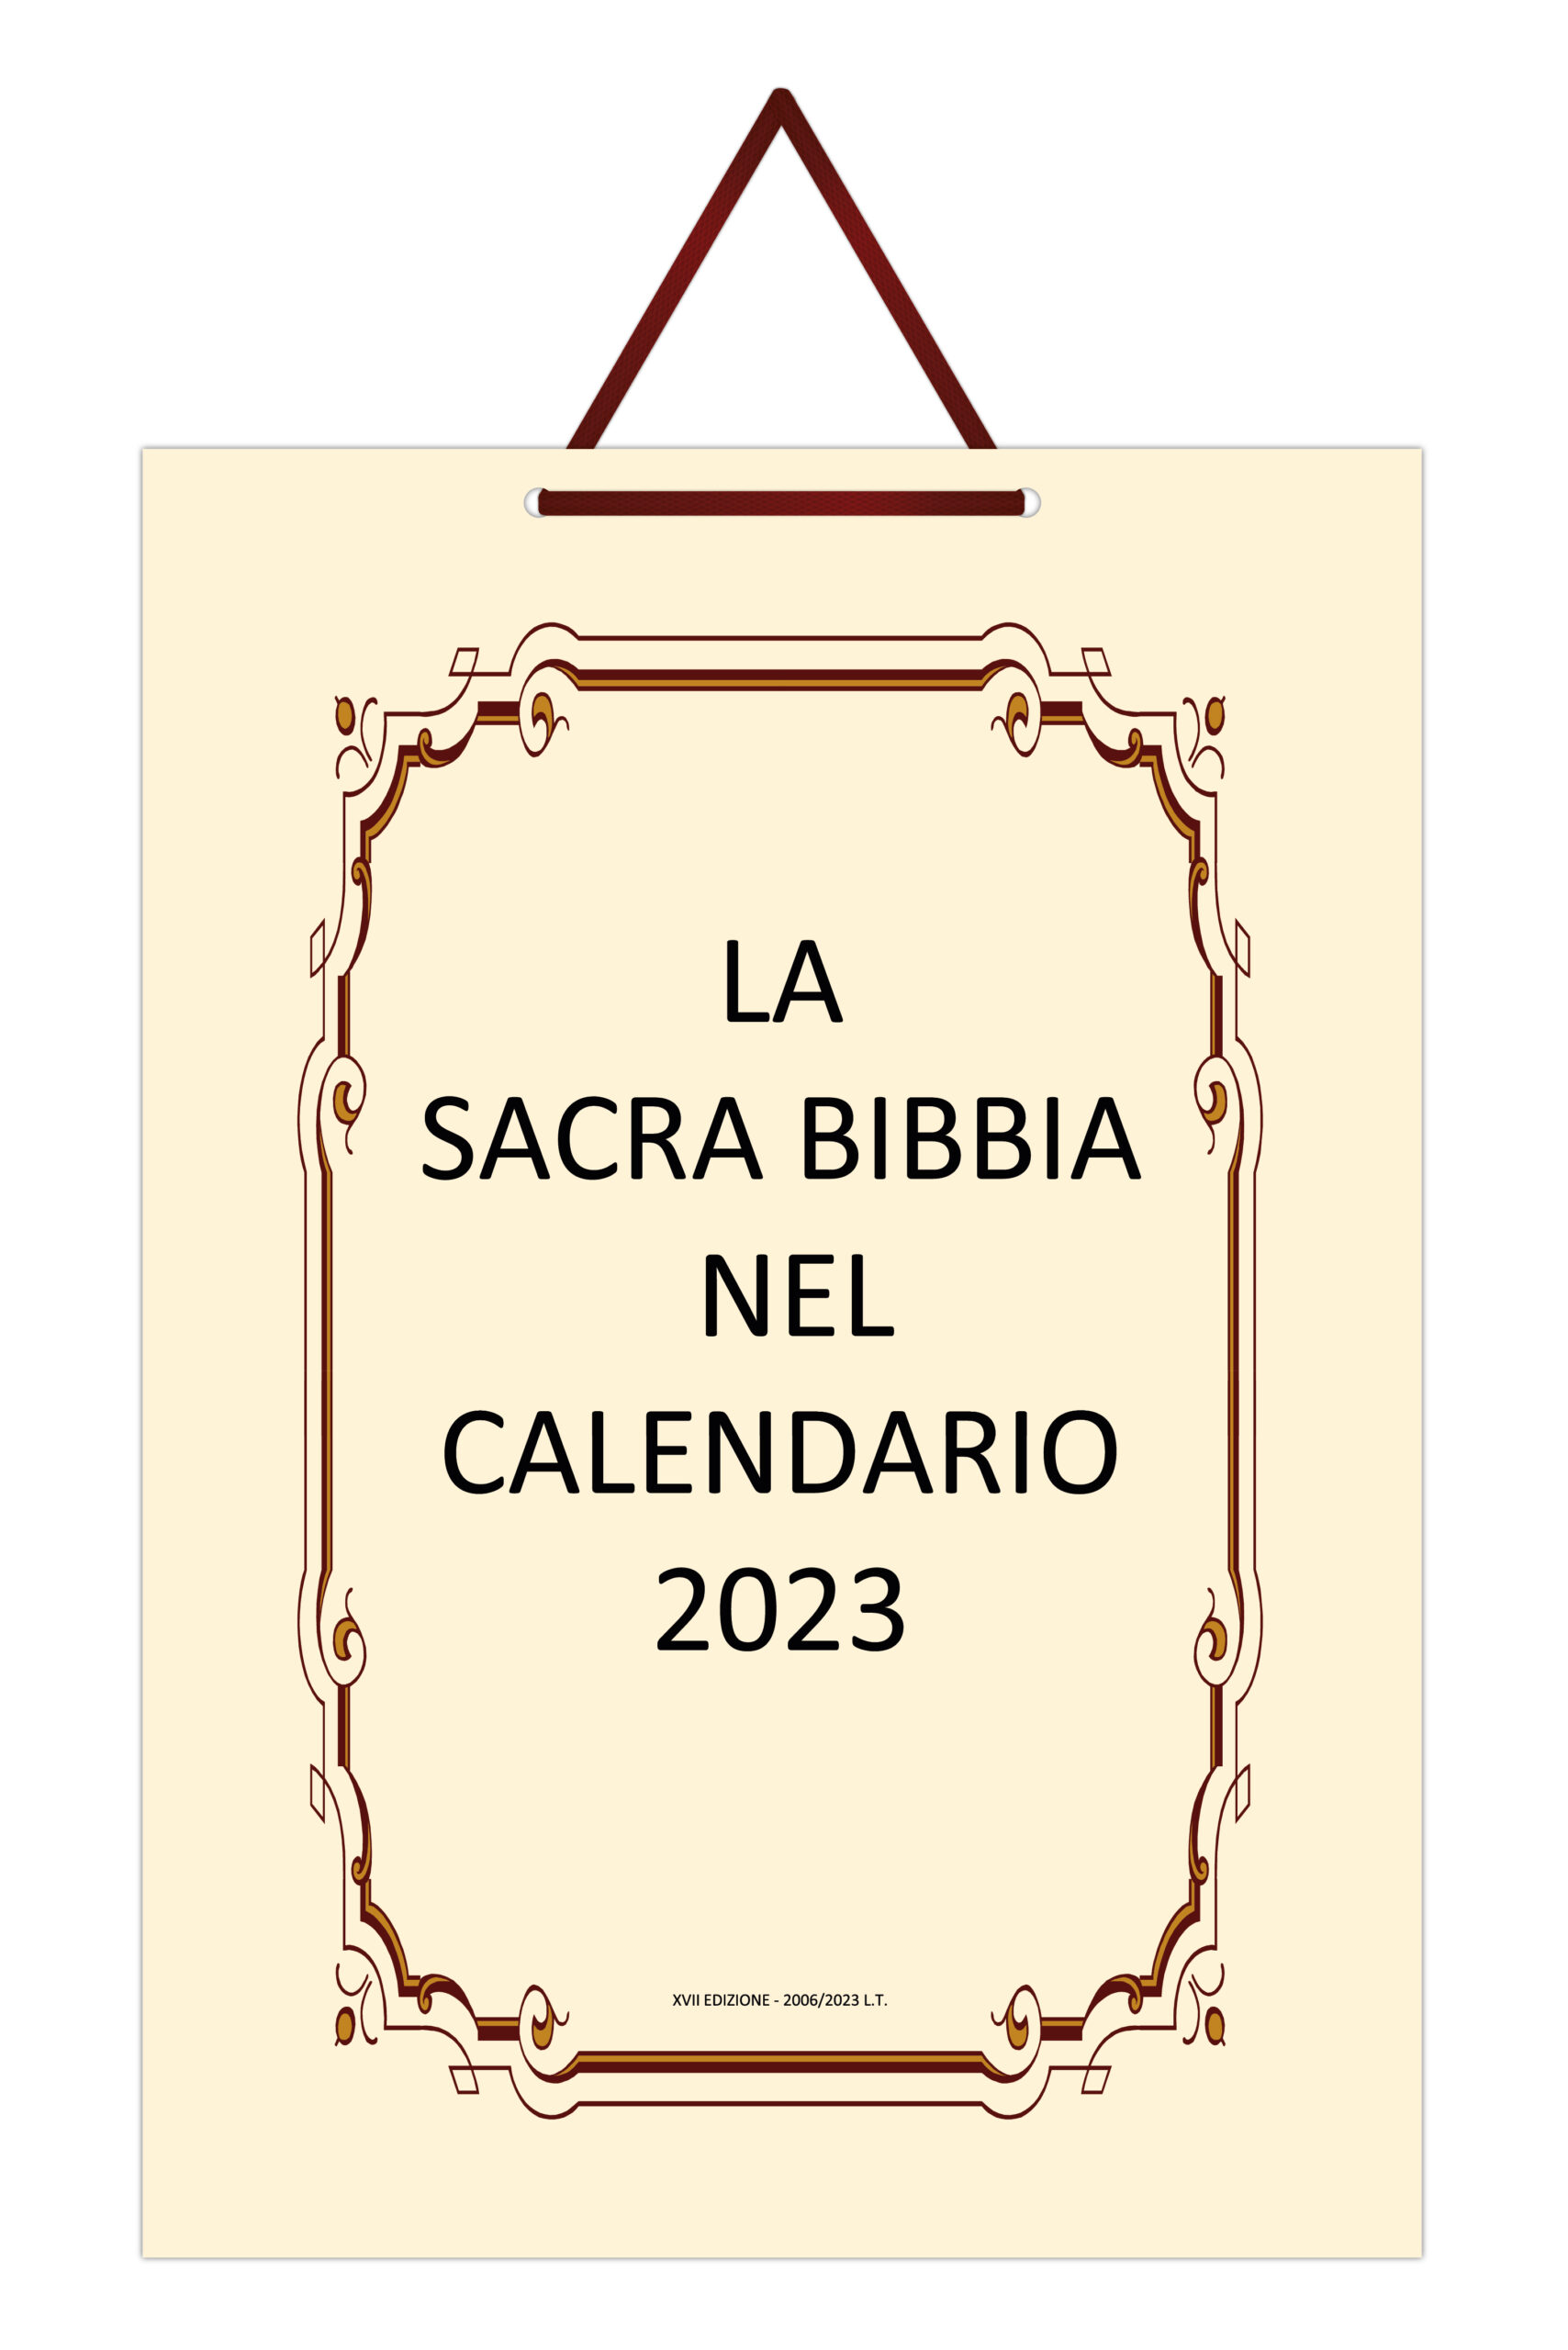 La Sacra Bibbia nel Calendario 2023